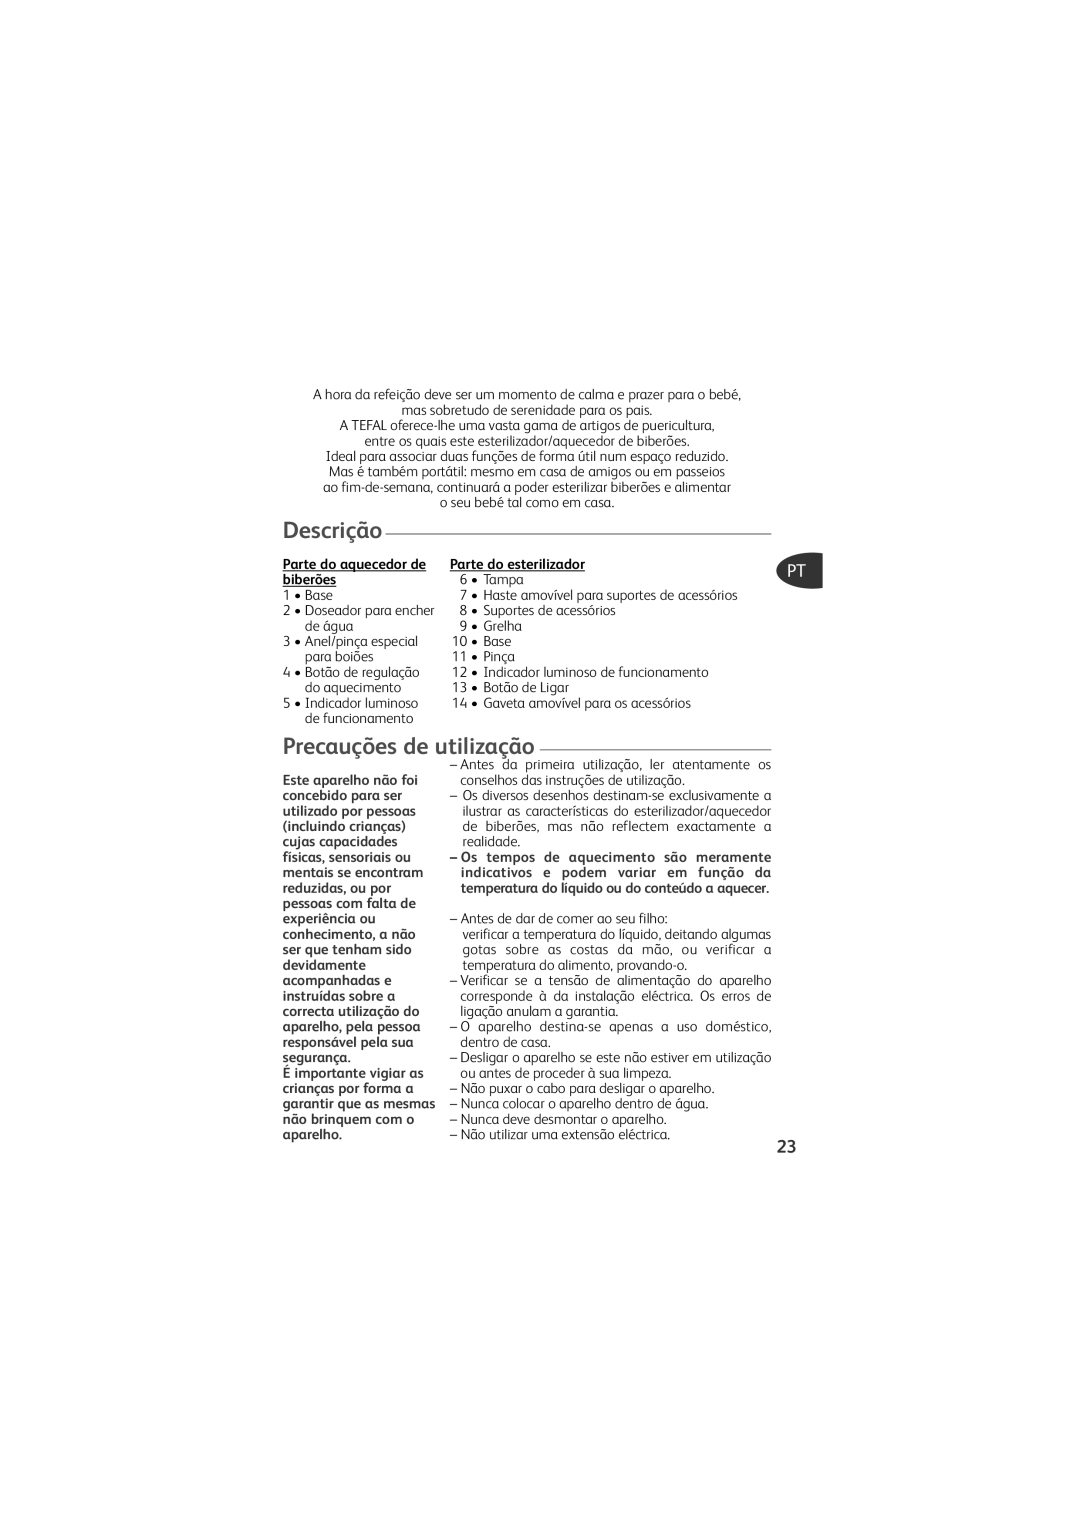 Tefal TD4200K0 manual Descrição, Precauções de utilização, Parte do esterilizador, biberões 